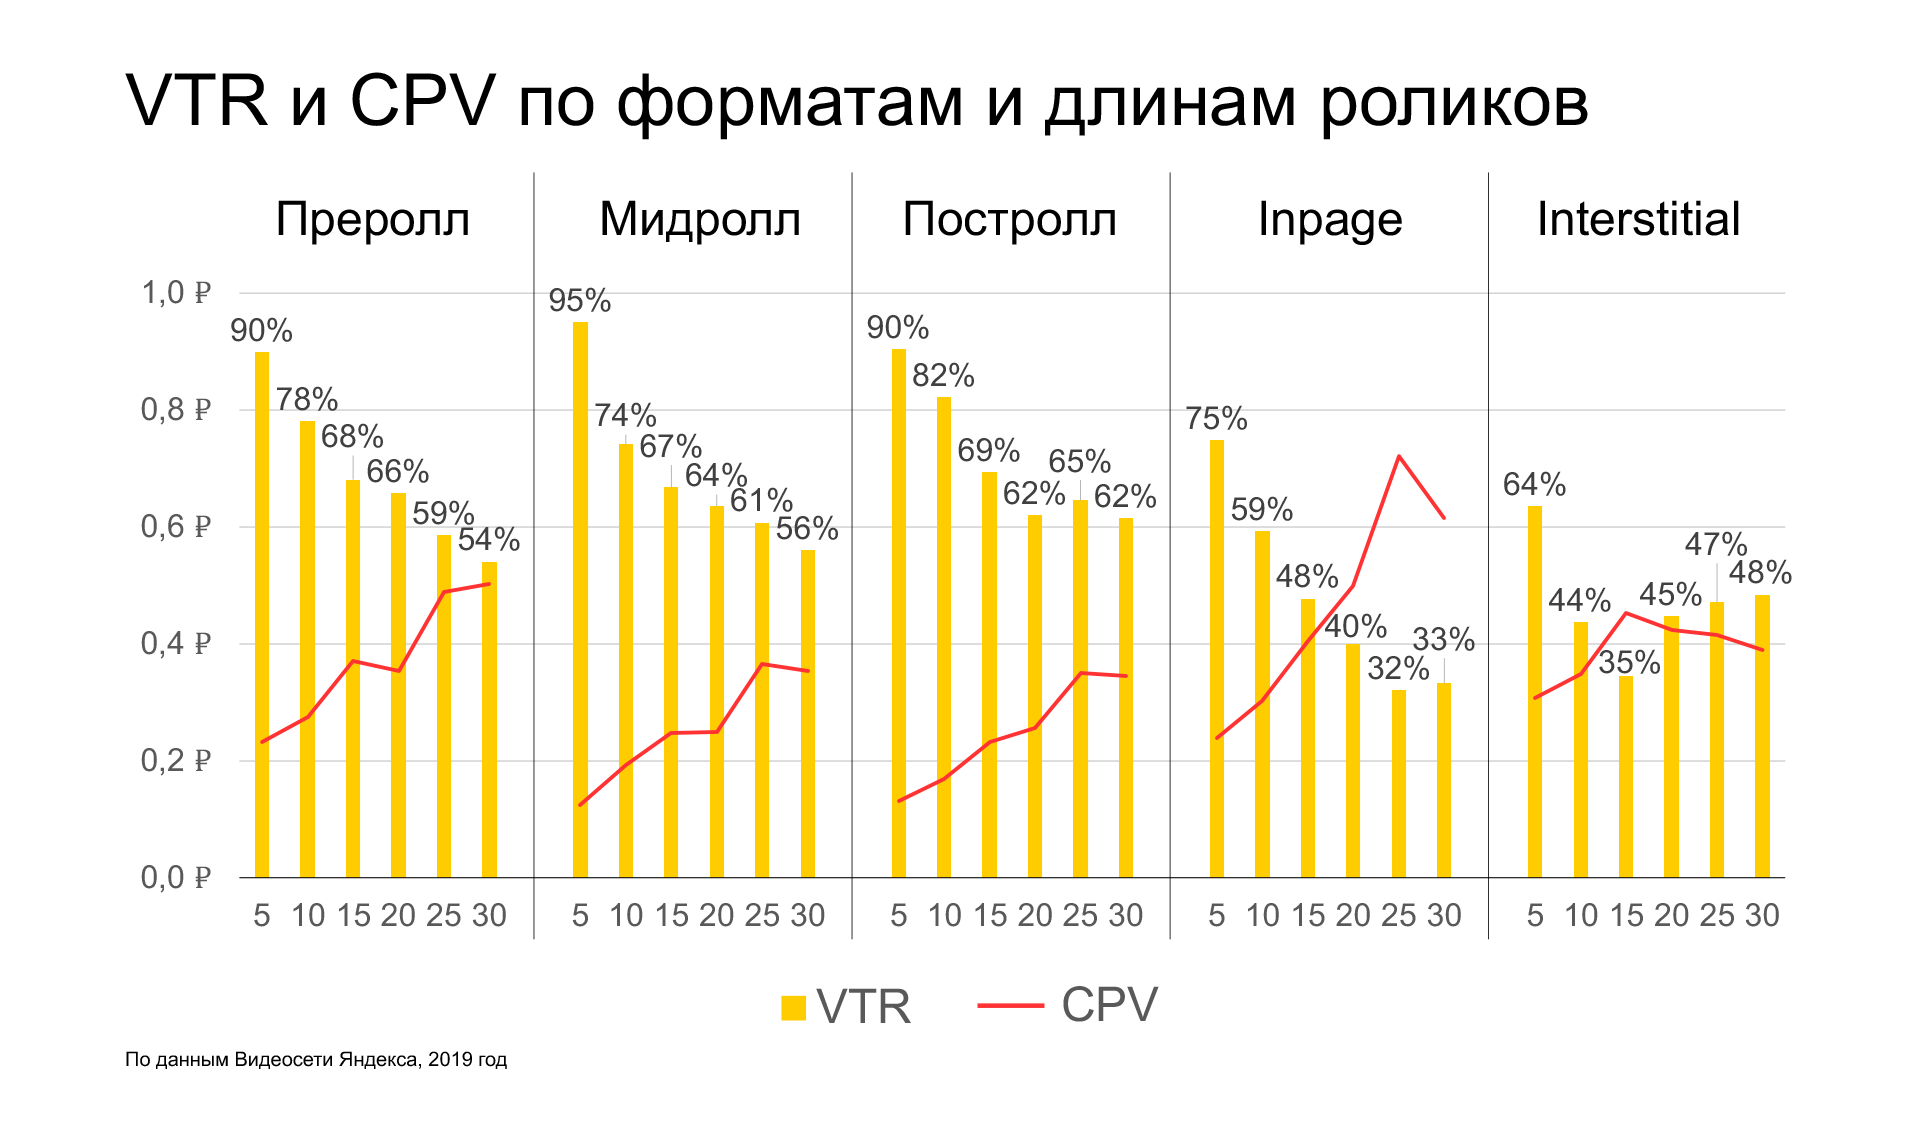 Исследование рынка онлайн-видеорекламы от Яндекса за 2019 год: VTR и CPV по форматам и длинам роликов